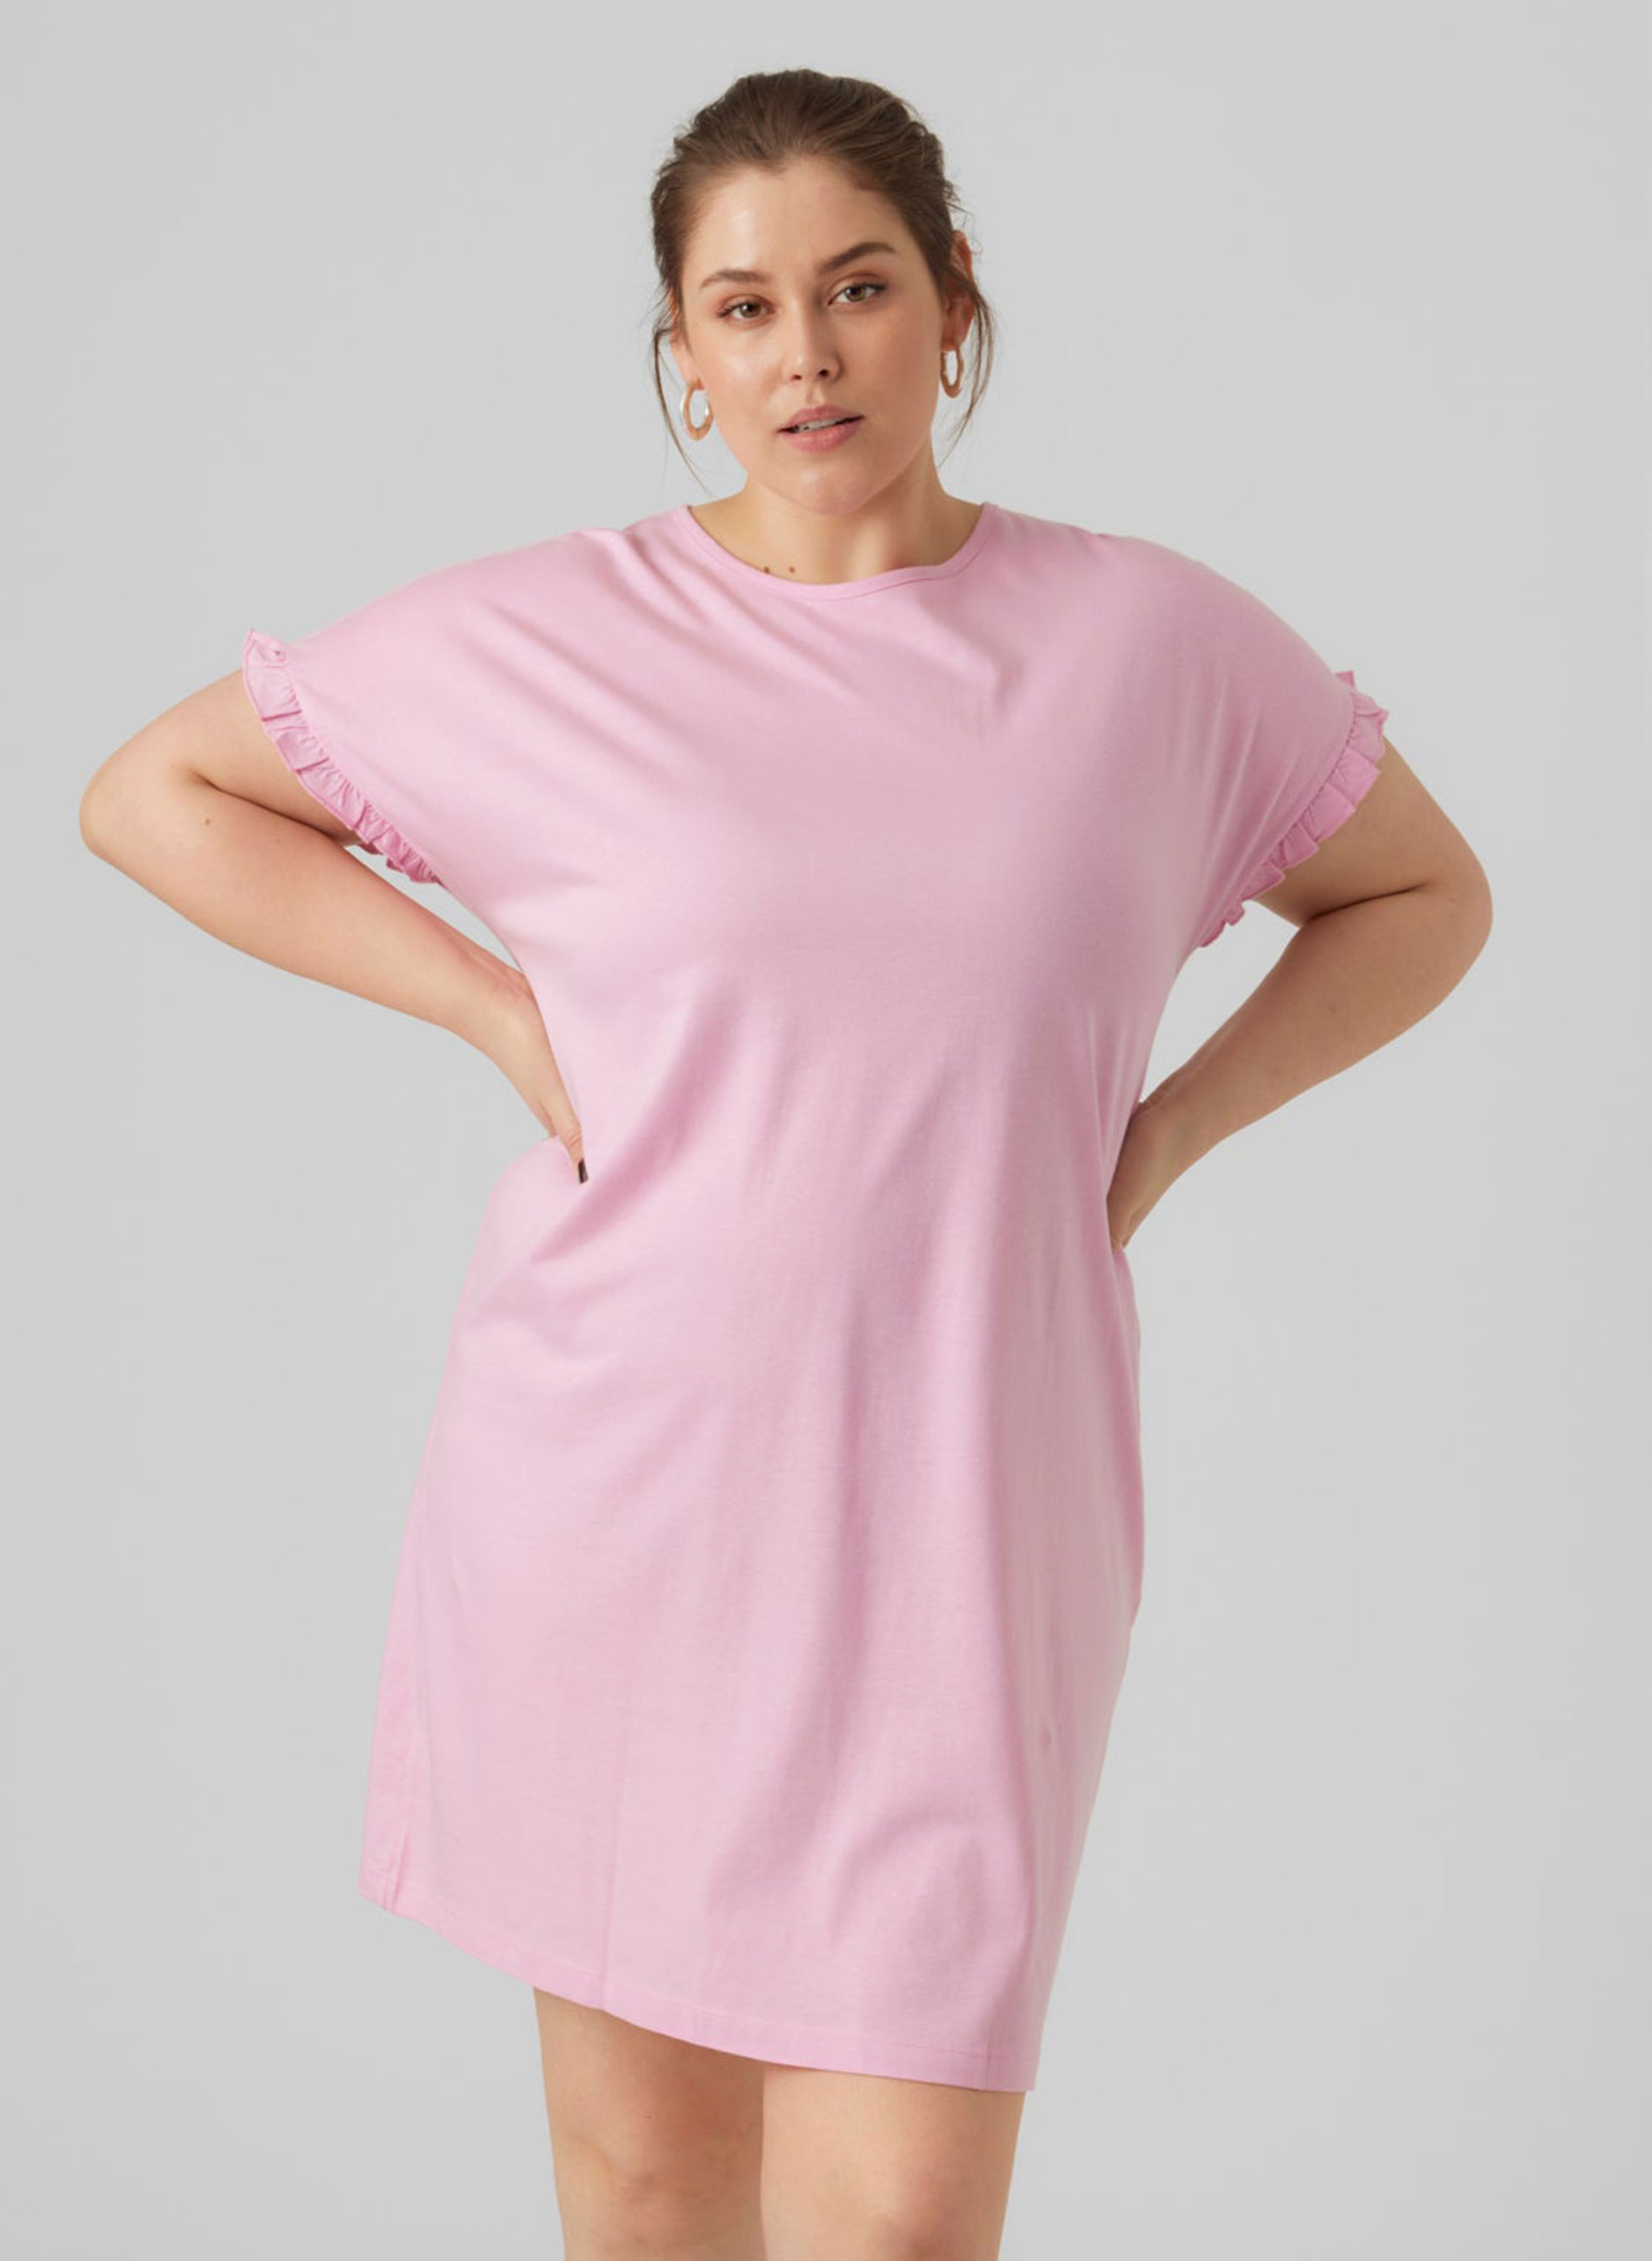 Φόρεμα Τουνίκ Βισκόζης Ροζ με Βολάν στο Μανίκι ΜΕΓΑΛΑ ΜΕΓΕΘΗ ΦΟΡΕΜΑΤΑ